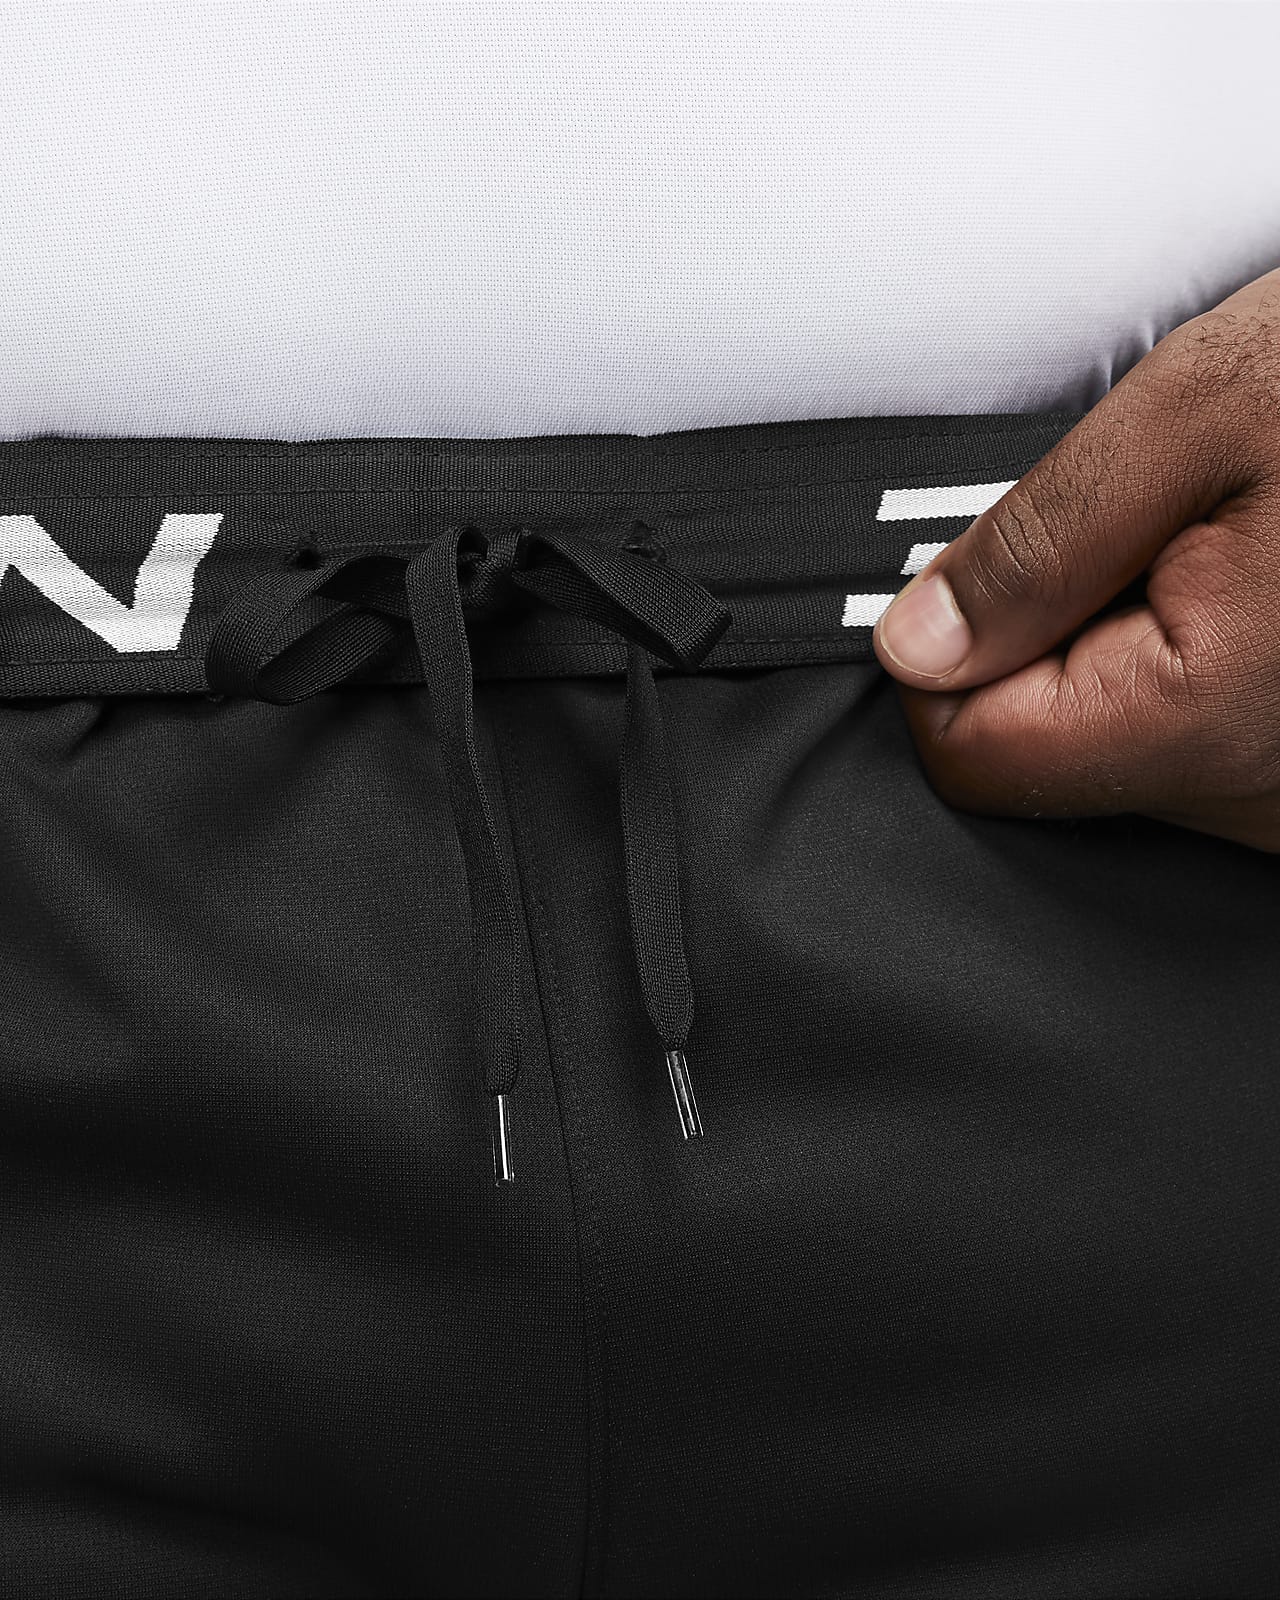 Nike Sportswear Tapered Pants in Mottled Black